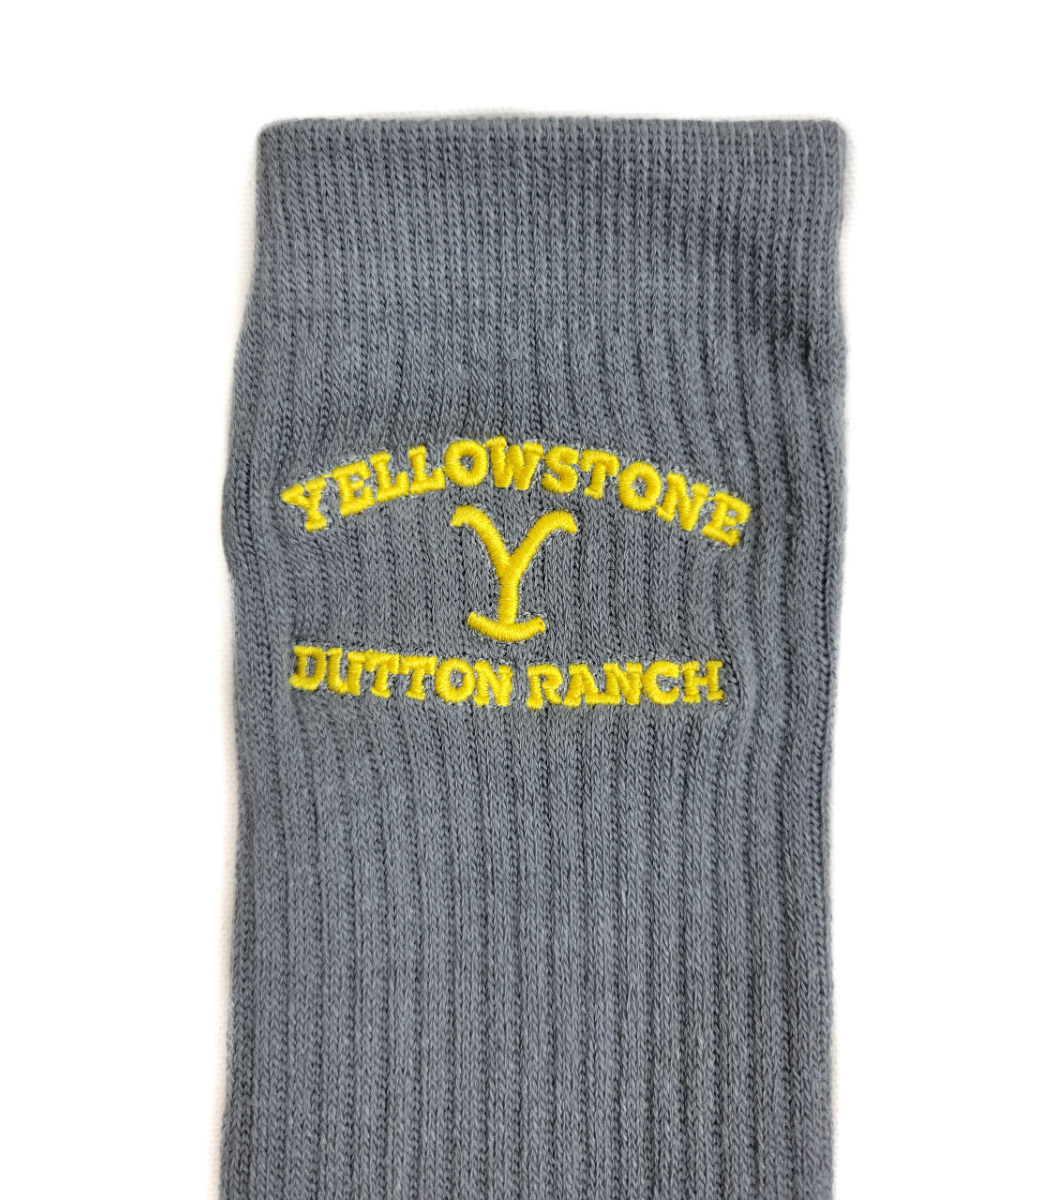 Yellowstone Y Logo Wool Socks